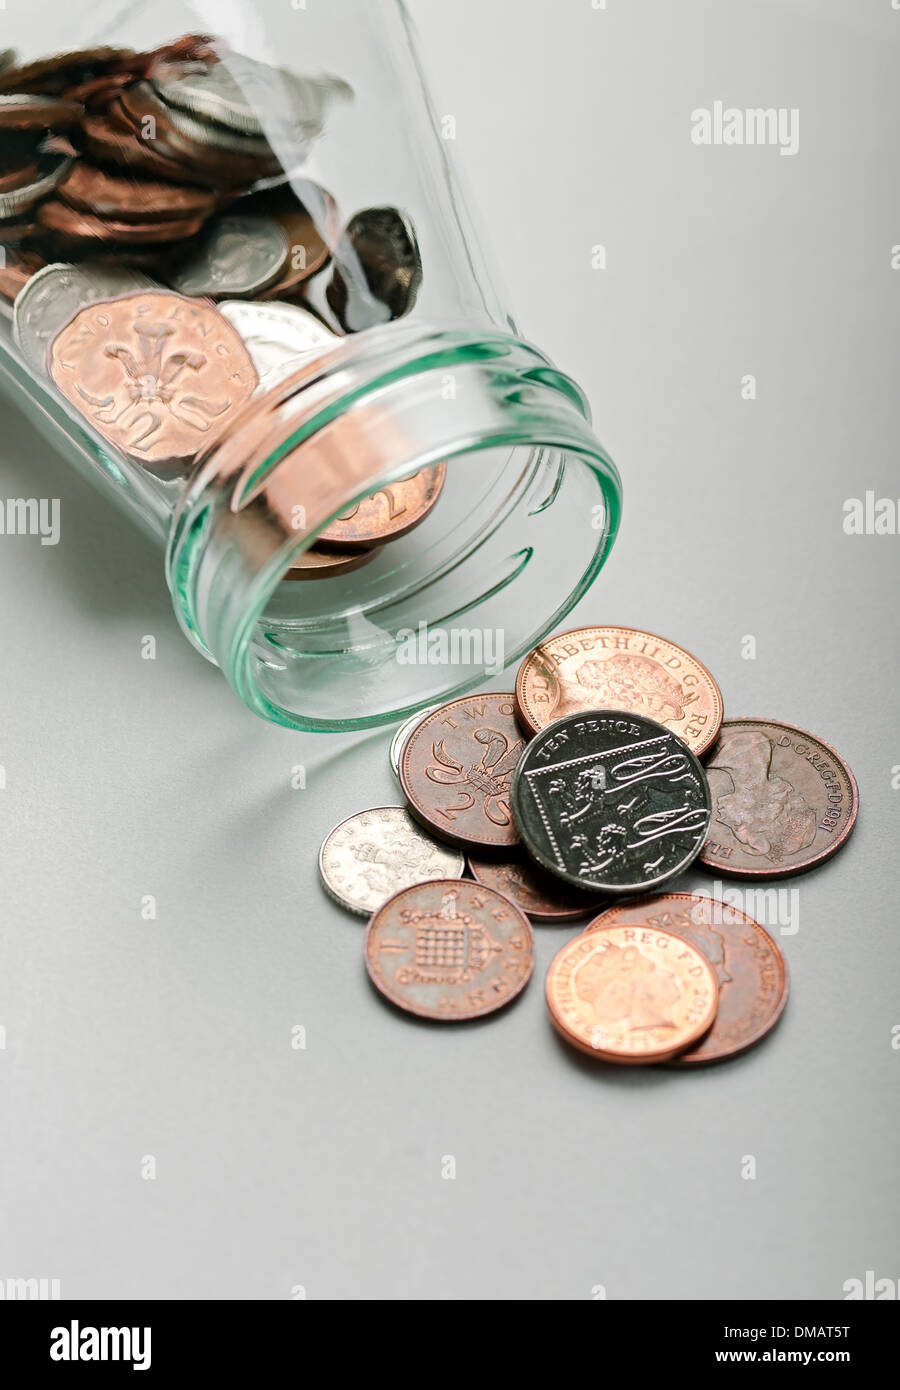 Primo piano di denaro inglese denaro contante monete penny e marmellata concetto di risparmio Inghilterra Regno Unito Regno Unito Gran Bretagna Gran Bretagna Foto Stock